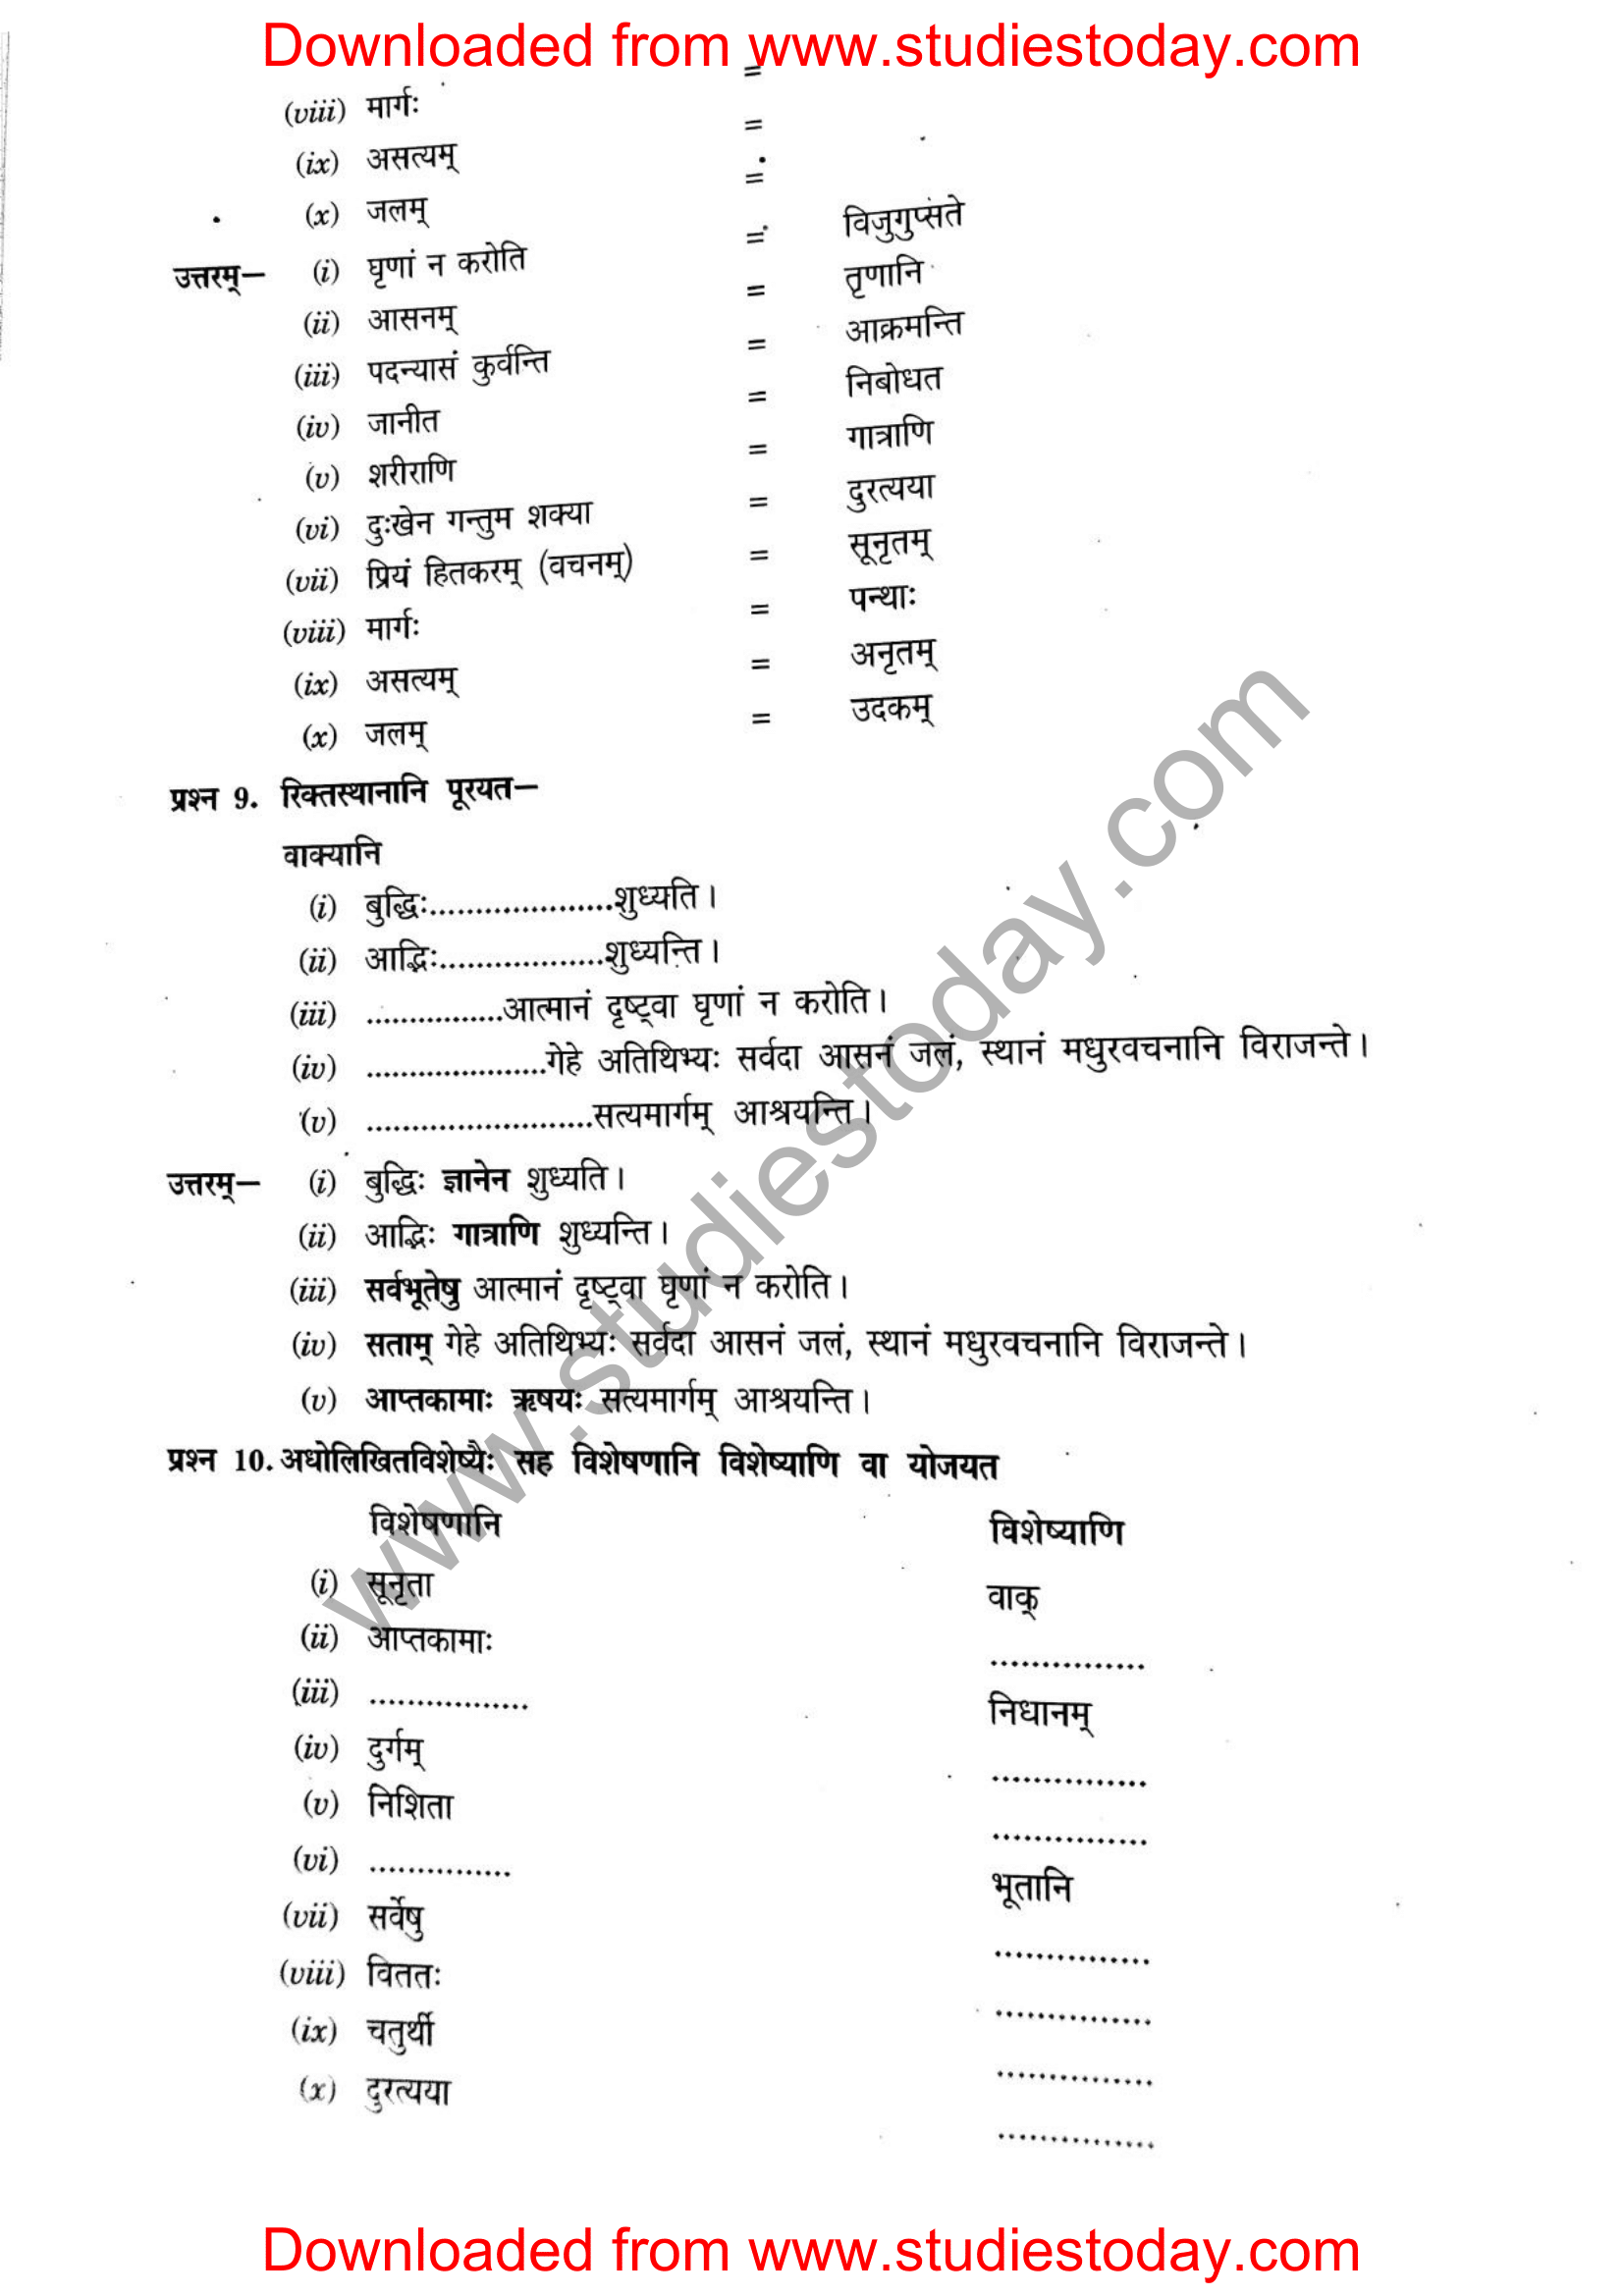 ncert-solutions-class-12-sanskrit-ritikia-chapter-1-08